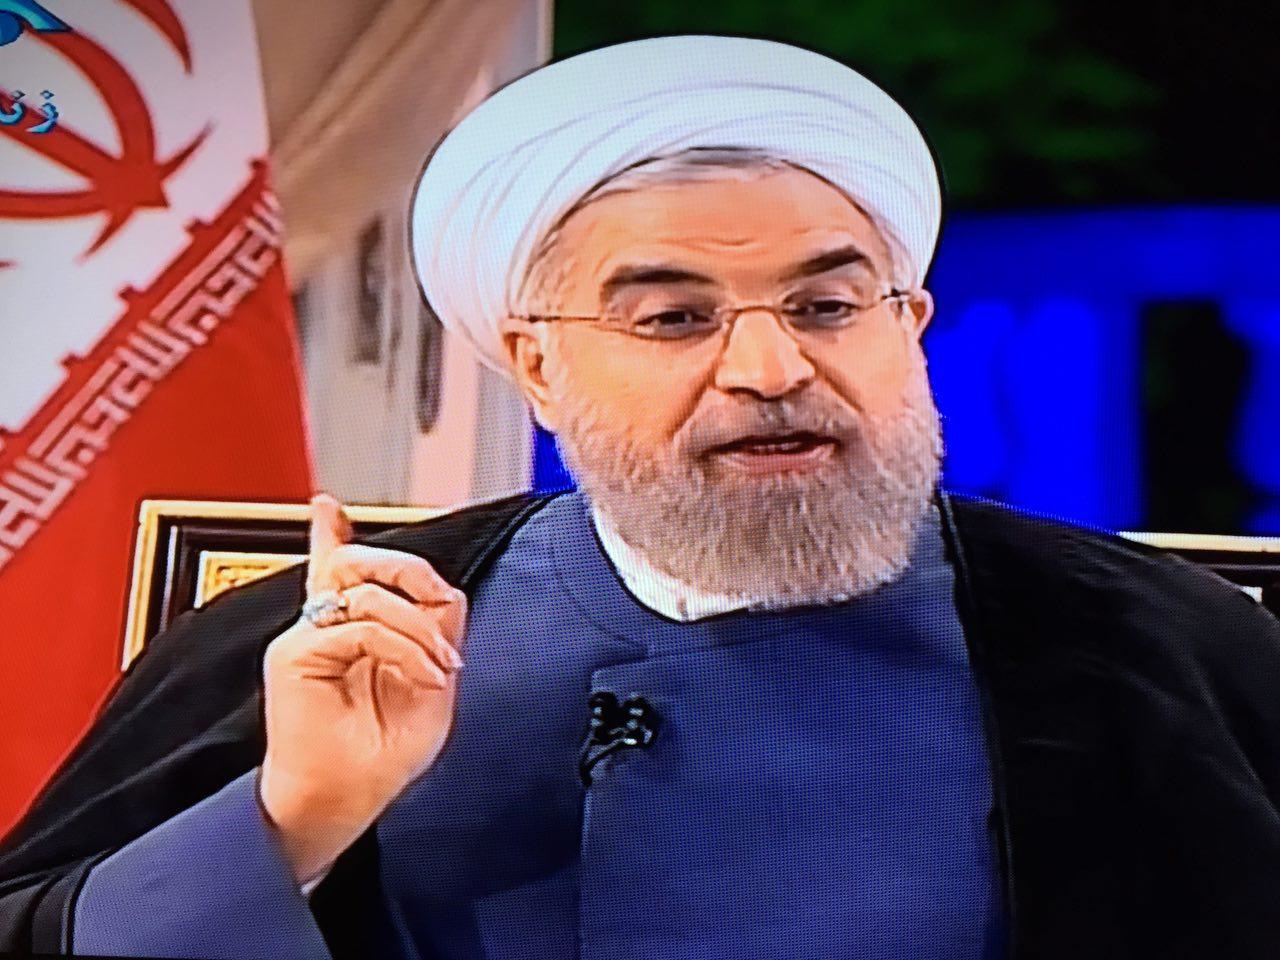  آنچه که یکشنبه شب روحانی در تلویزیون گفت/از ابعاد توافق،عدم محدودیت نظامی، دستاوردهای اقتصادی و ...